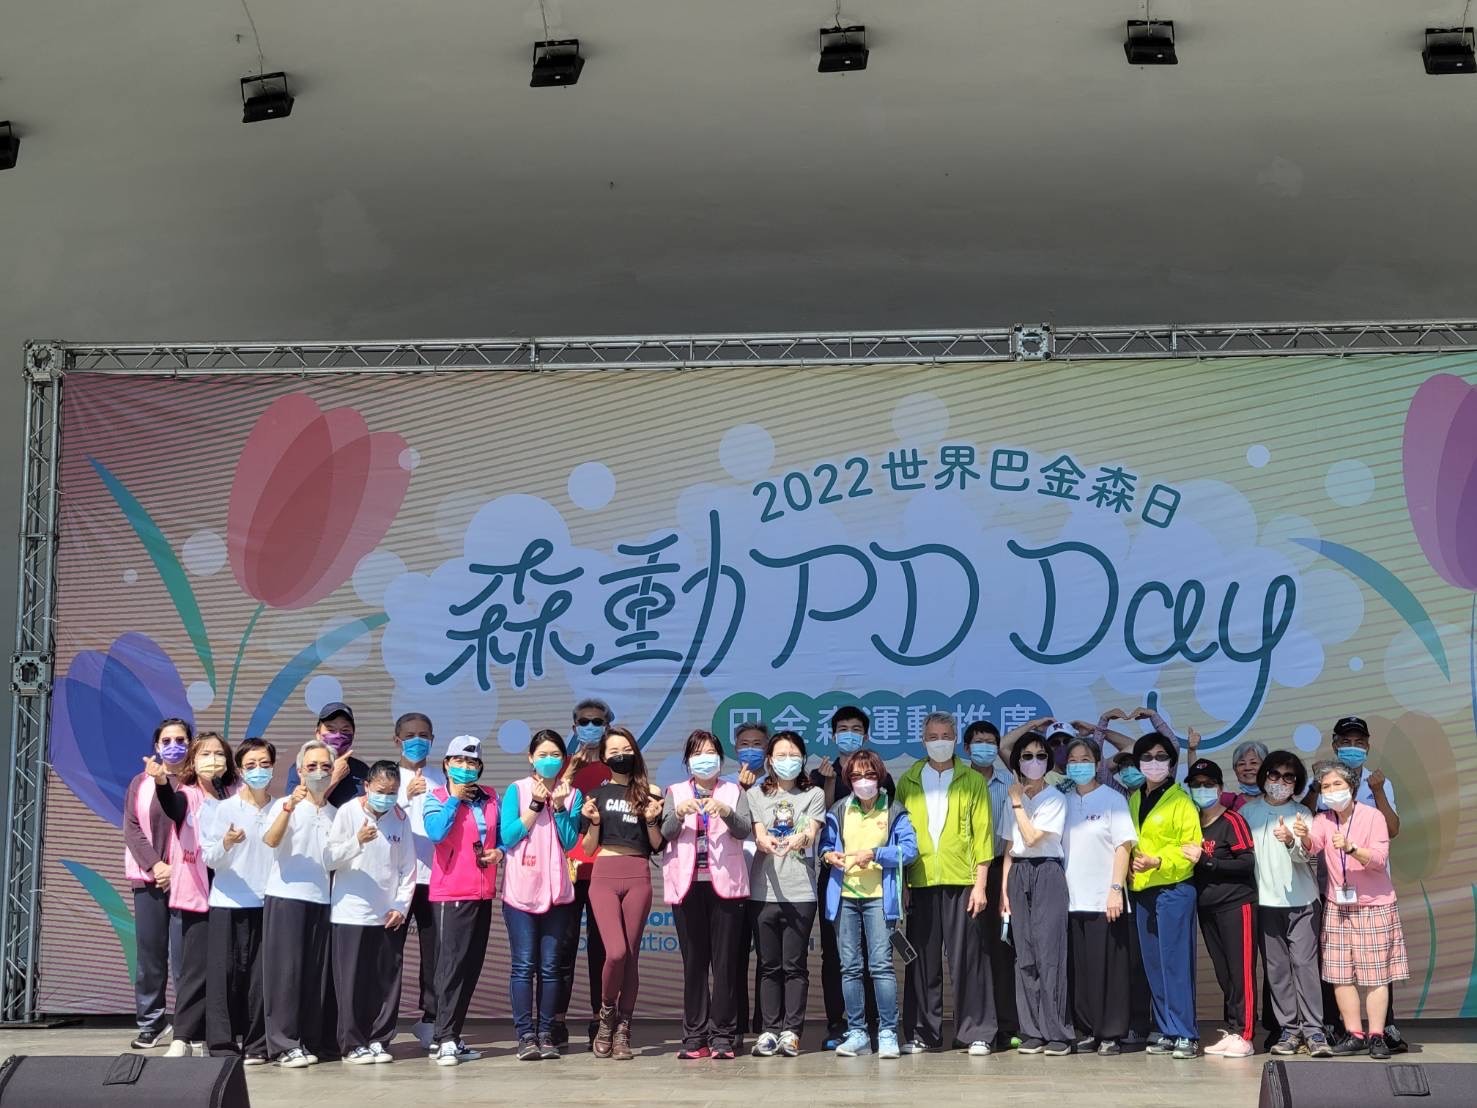 世界巴金森日「森動PD Day」 臺大醫院邀請巴金森病友參與戶外活動 呼籲病友自主運動改善病情